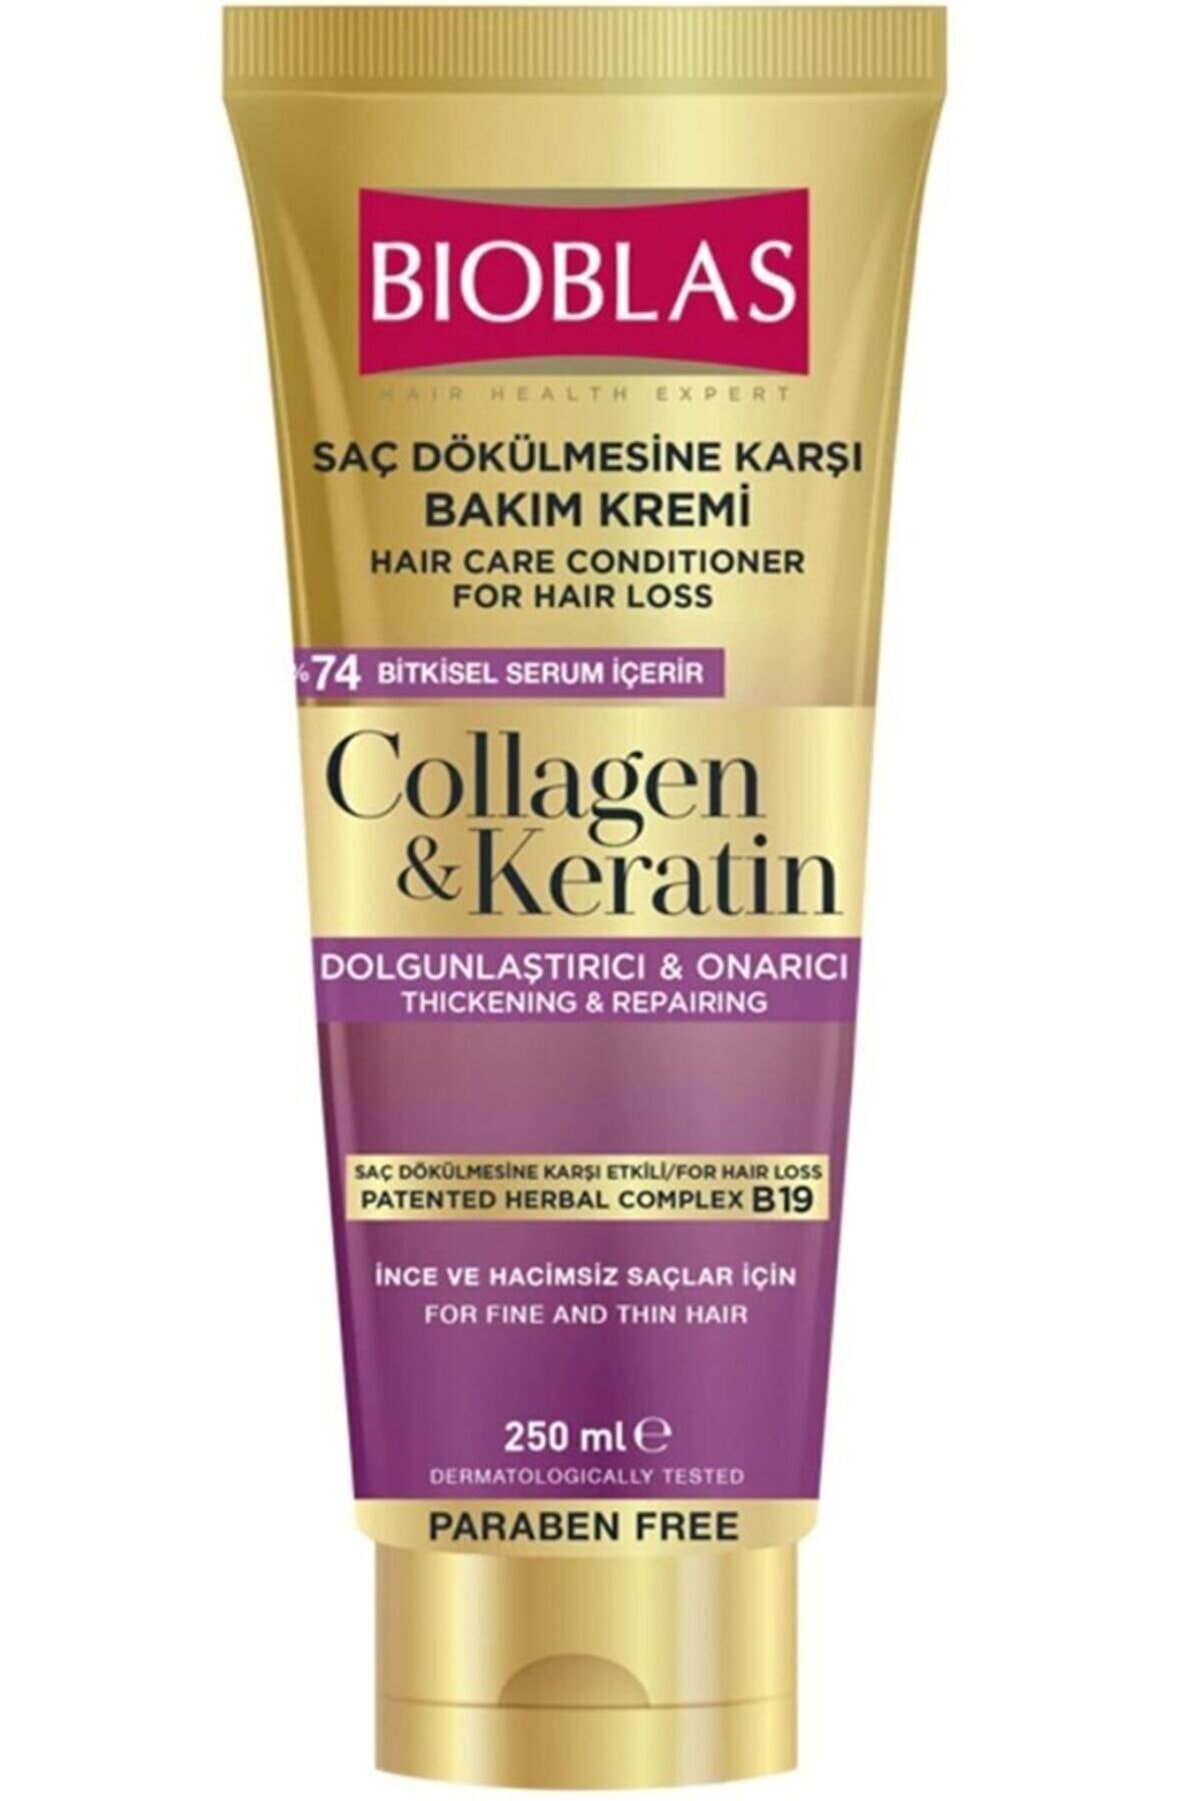 Bioblas Saç Dökülmesine Karşı Bakım Kremi 250ml Collagen&keratin